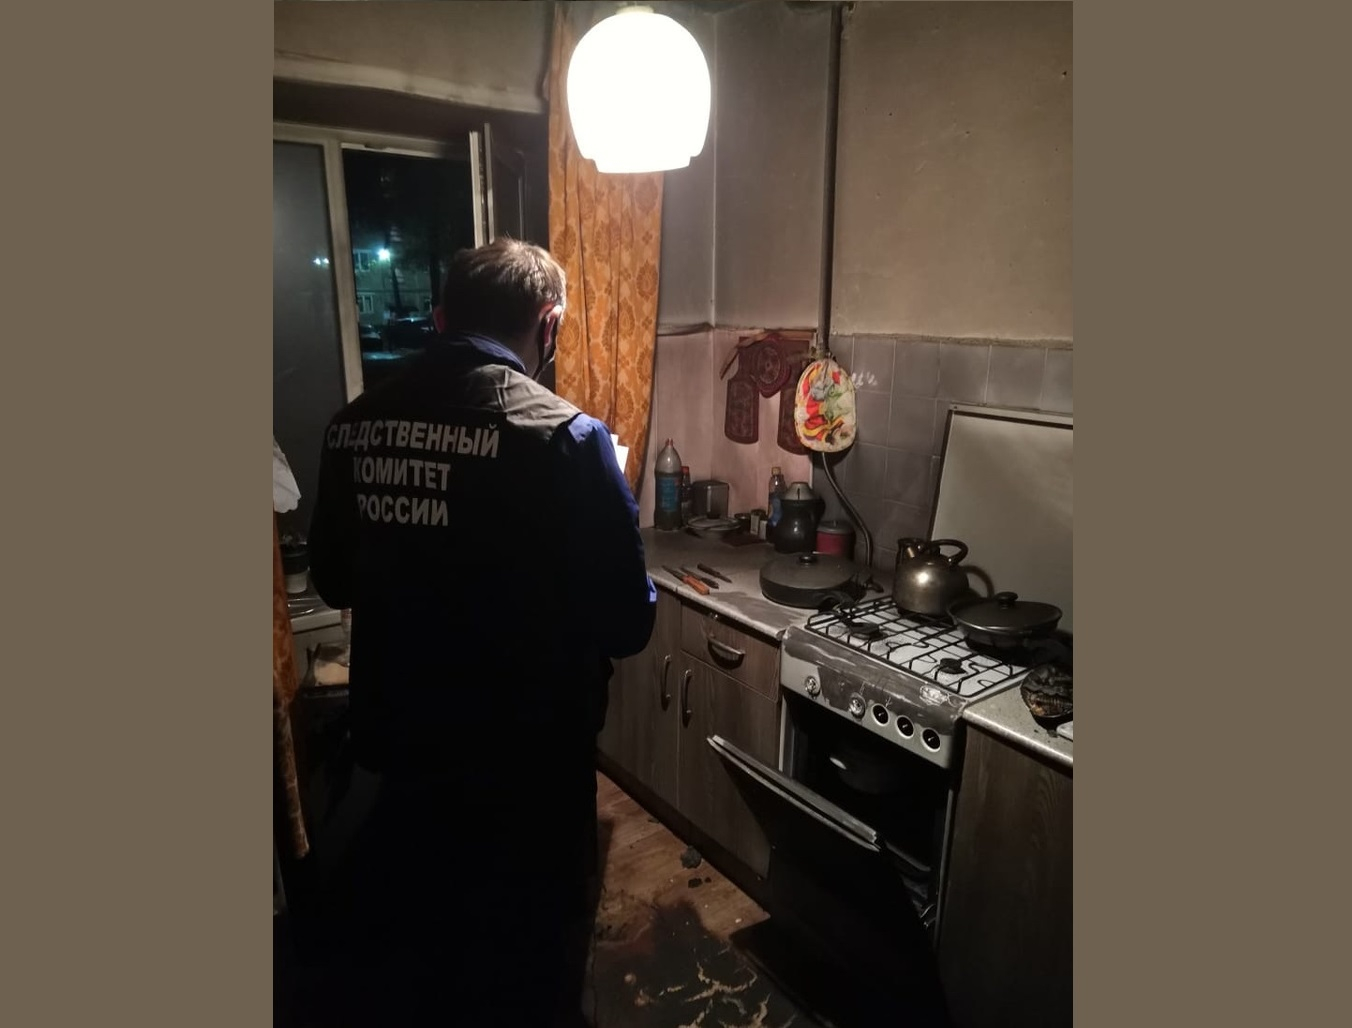 Тело женщины с ножевыми ранениями в центре Ярославля: взяли убийцу